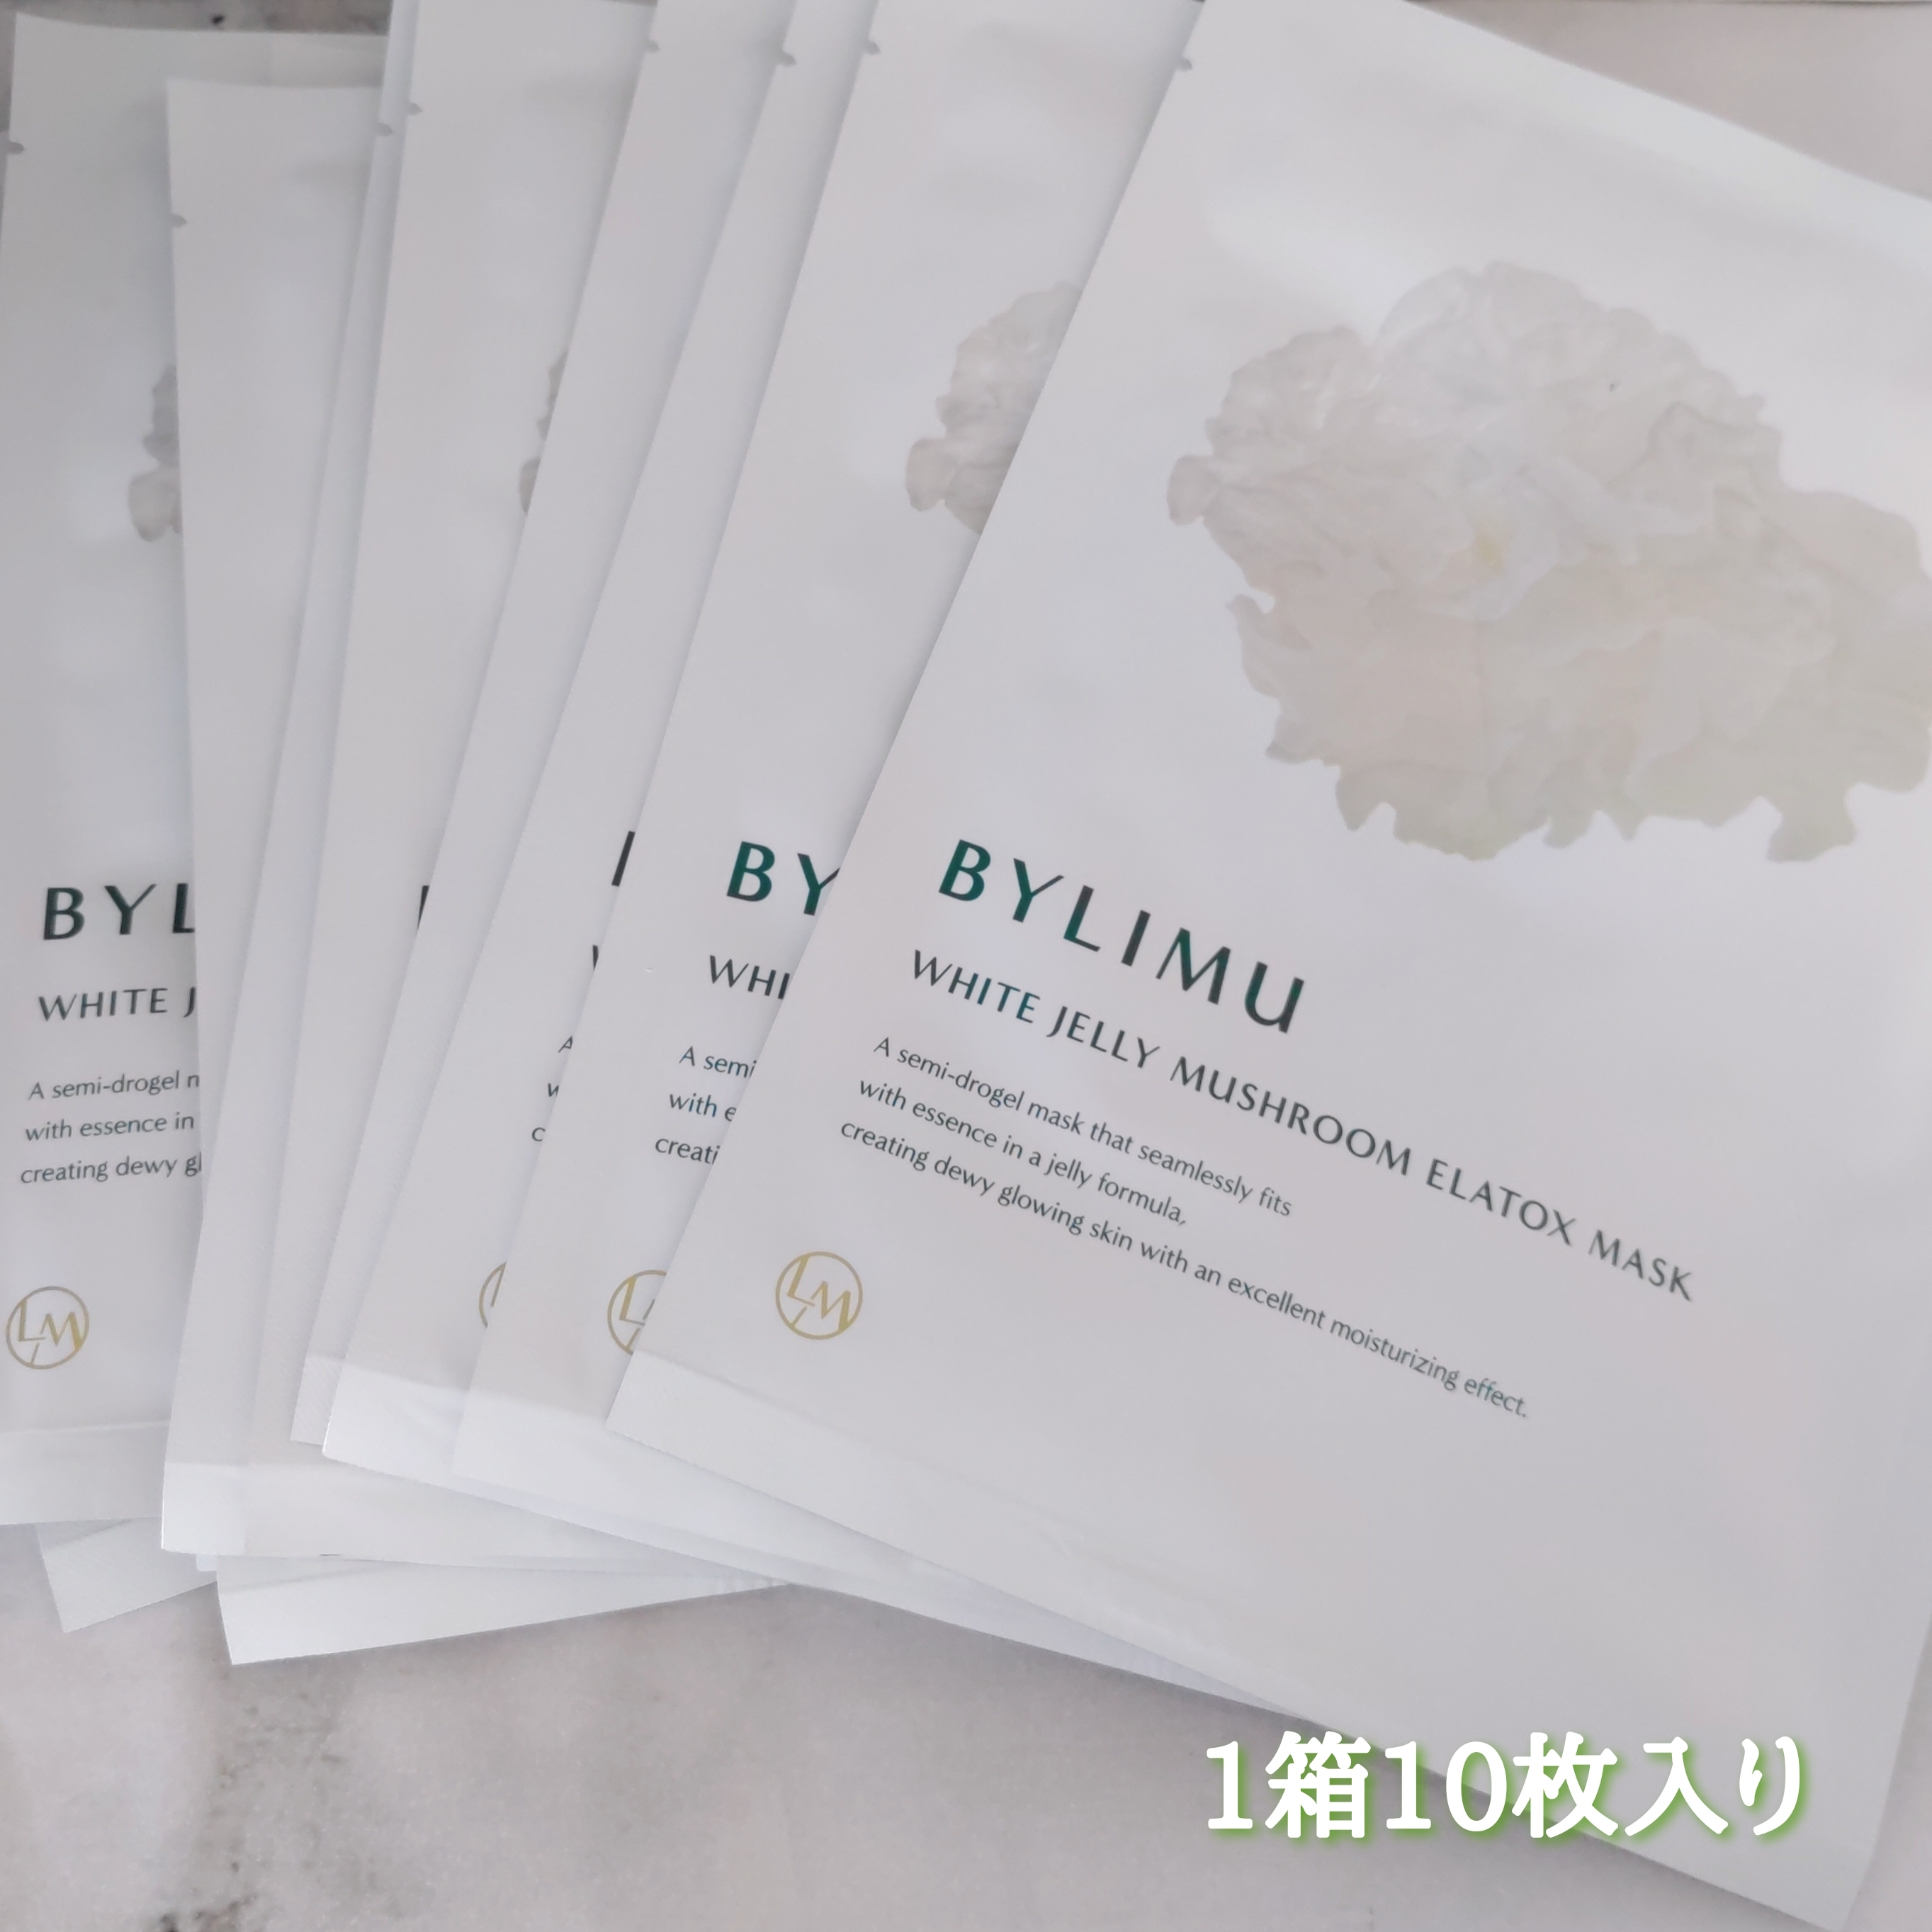 BYLIMU ホワイト ゼリー マッシュルーム エラトックス マスクを使ったYuKaRi♡さんのクチコミ画像2